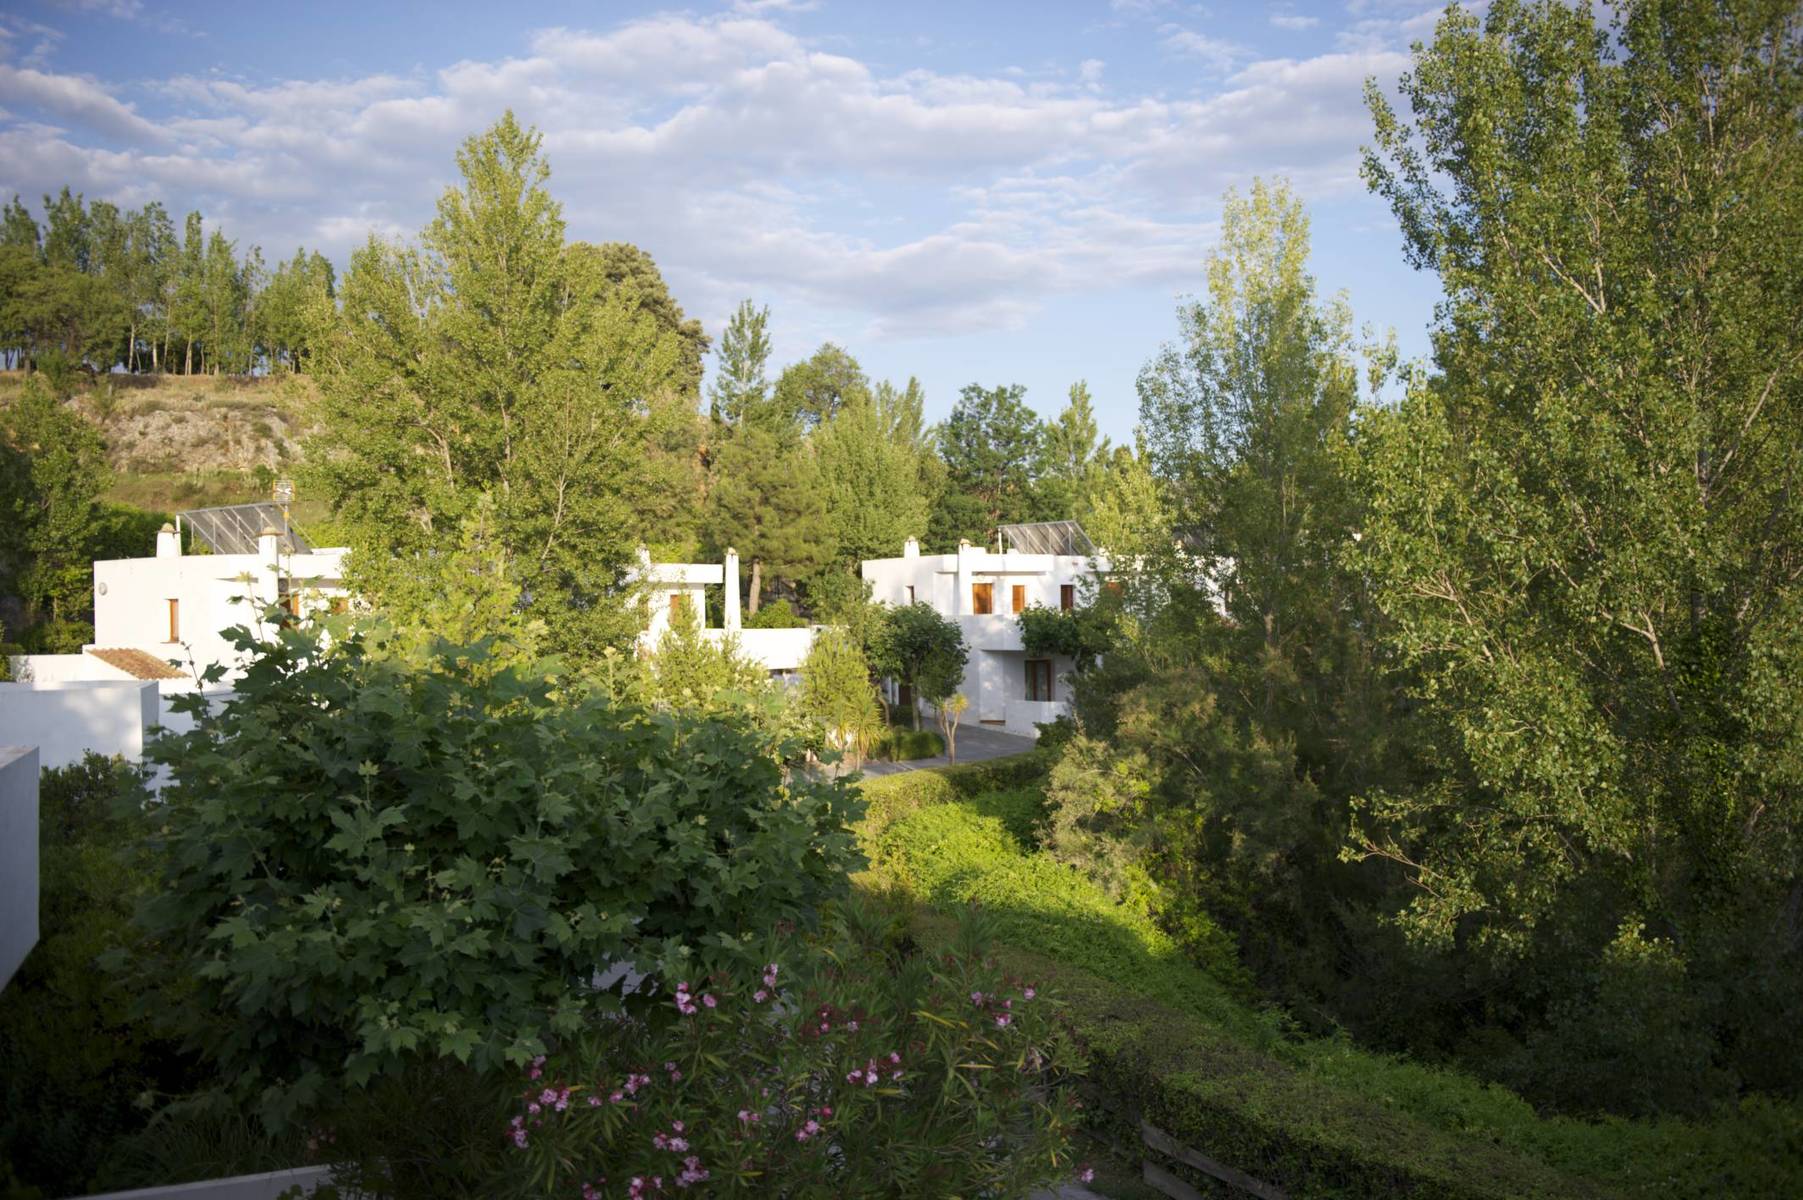 Hotel Villa de Laujar